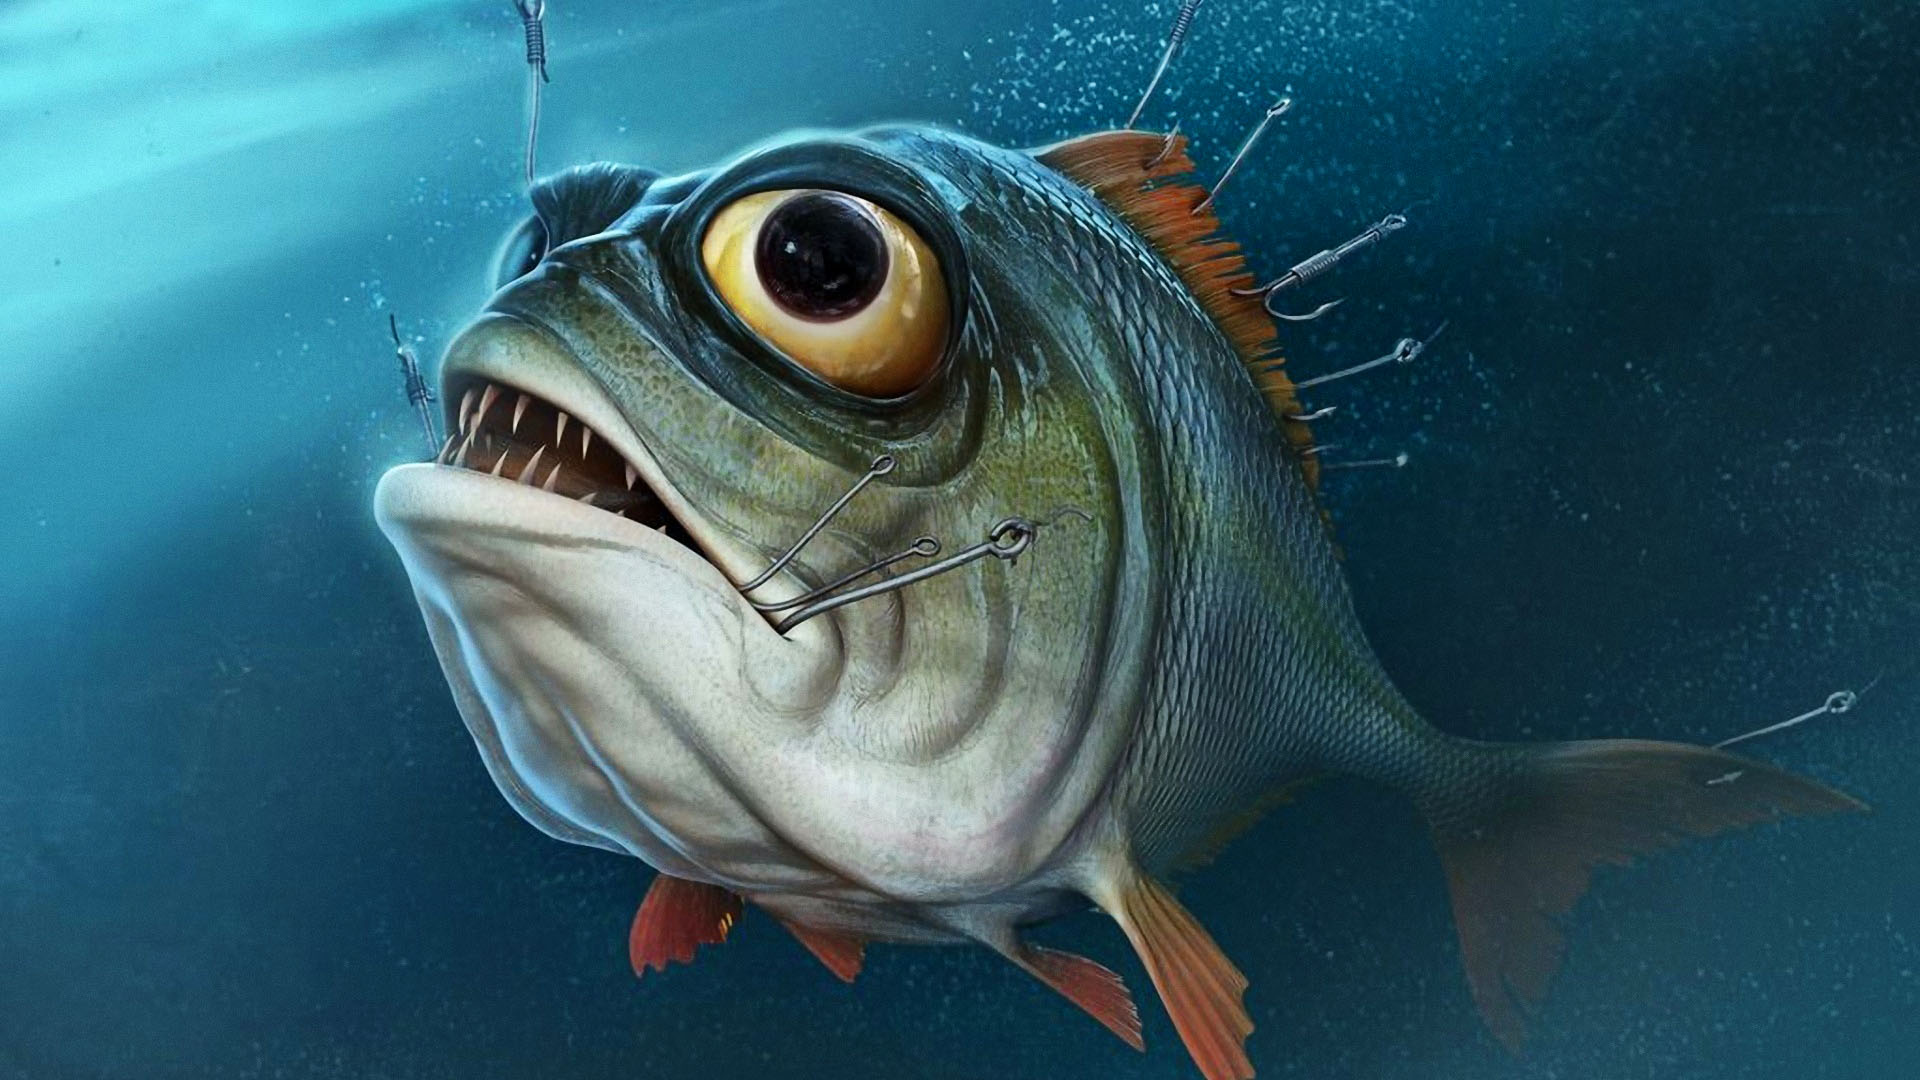 bass fishing wallpaper hd,fisch,fisch,tiefseefische,meeresbiologie,knochiger fisch